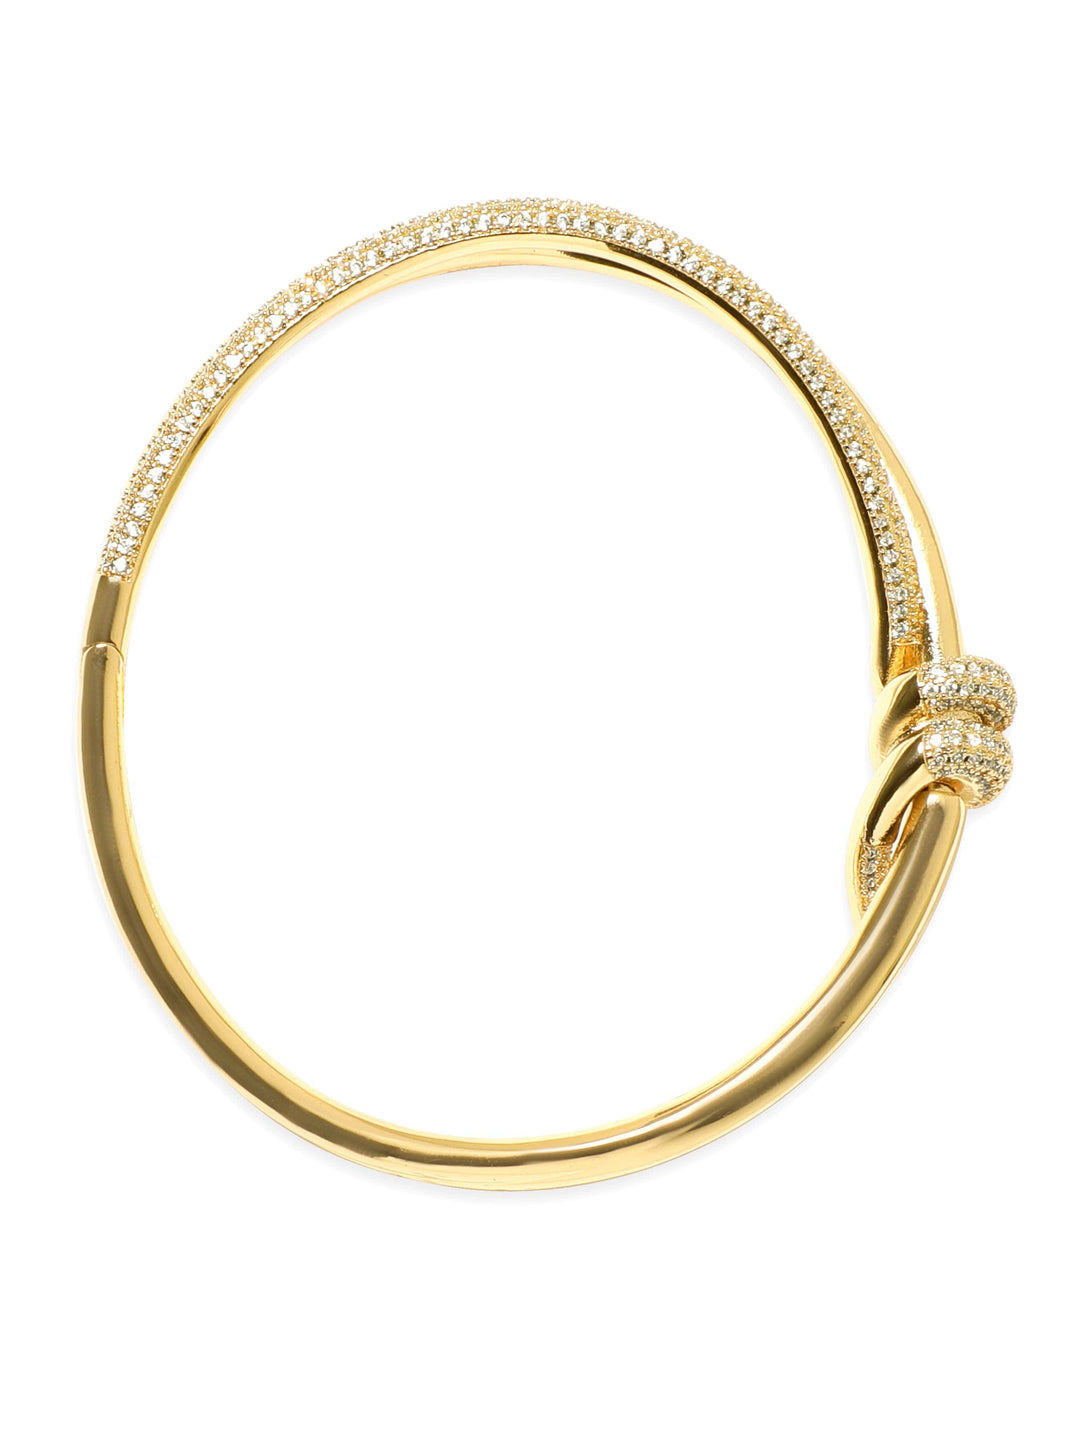 22K Gold plated Zirconia studded knot detail Chic bracelet Bangles & Bracelets